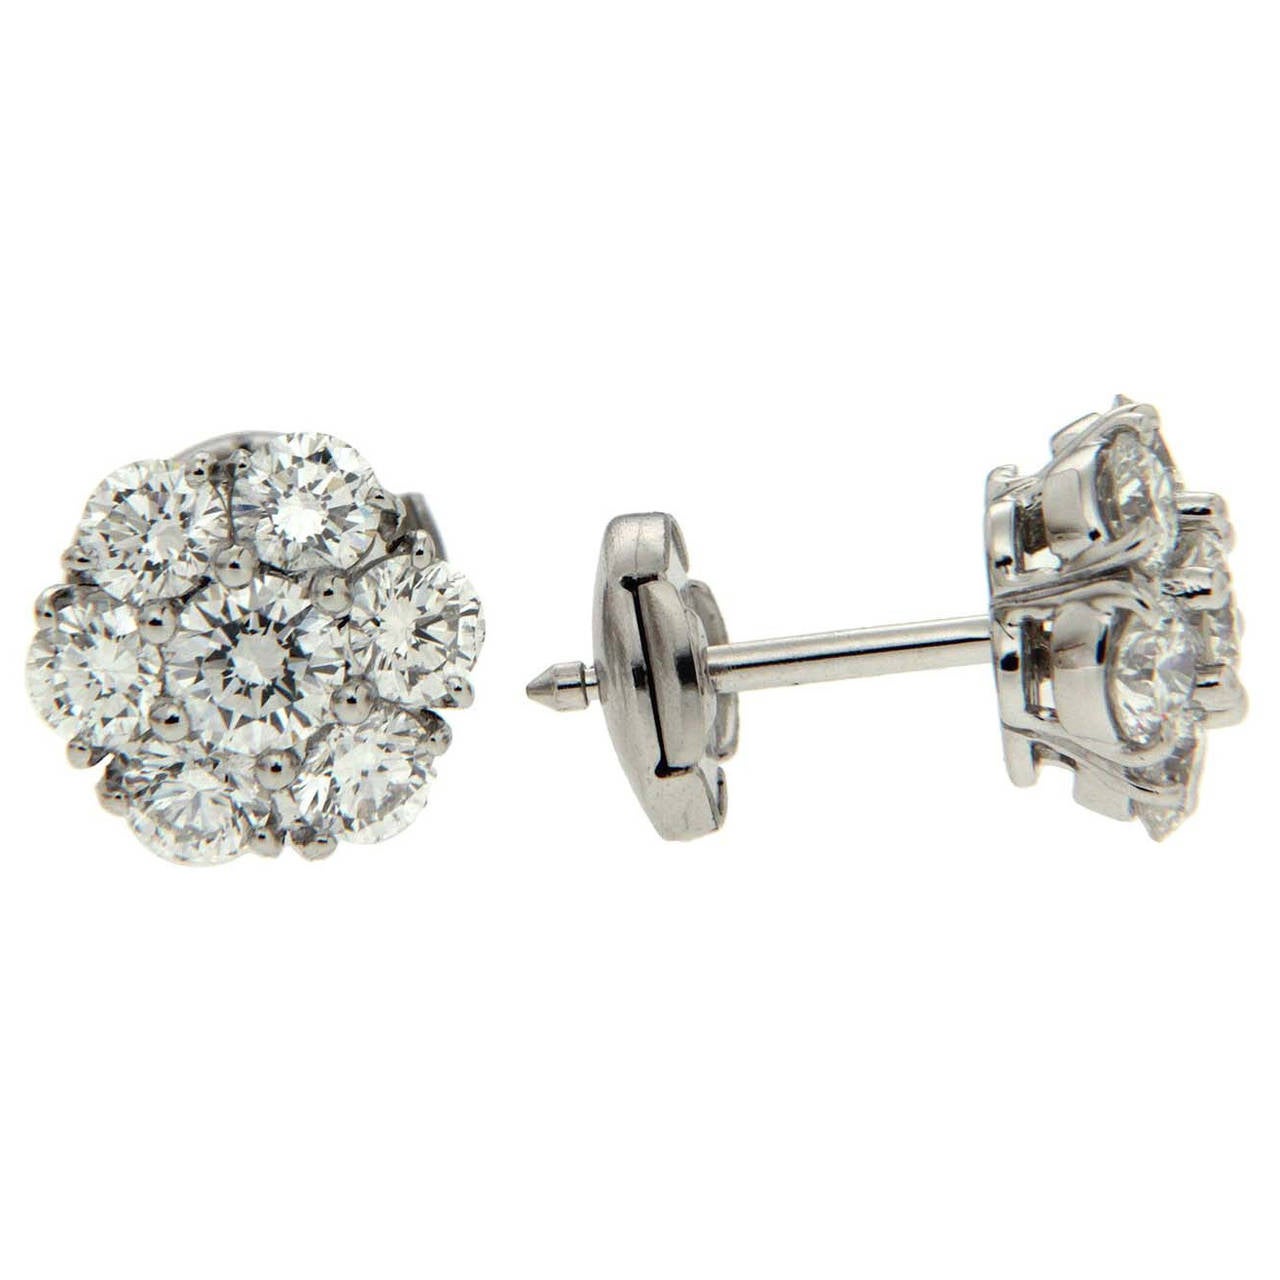 Valentin Magro Diamond Platinum Cluster Earrings